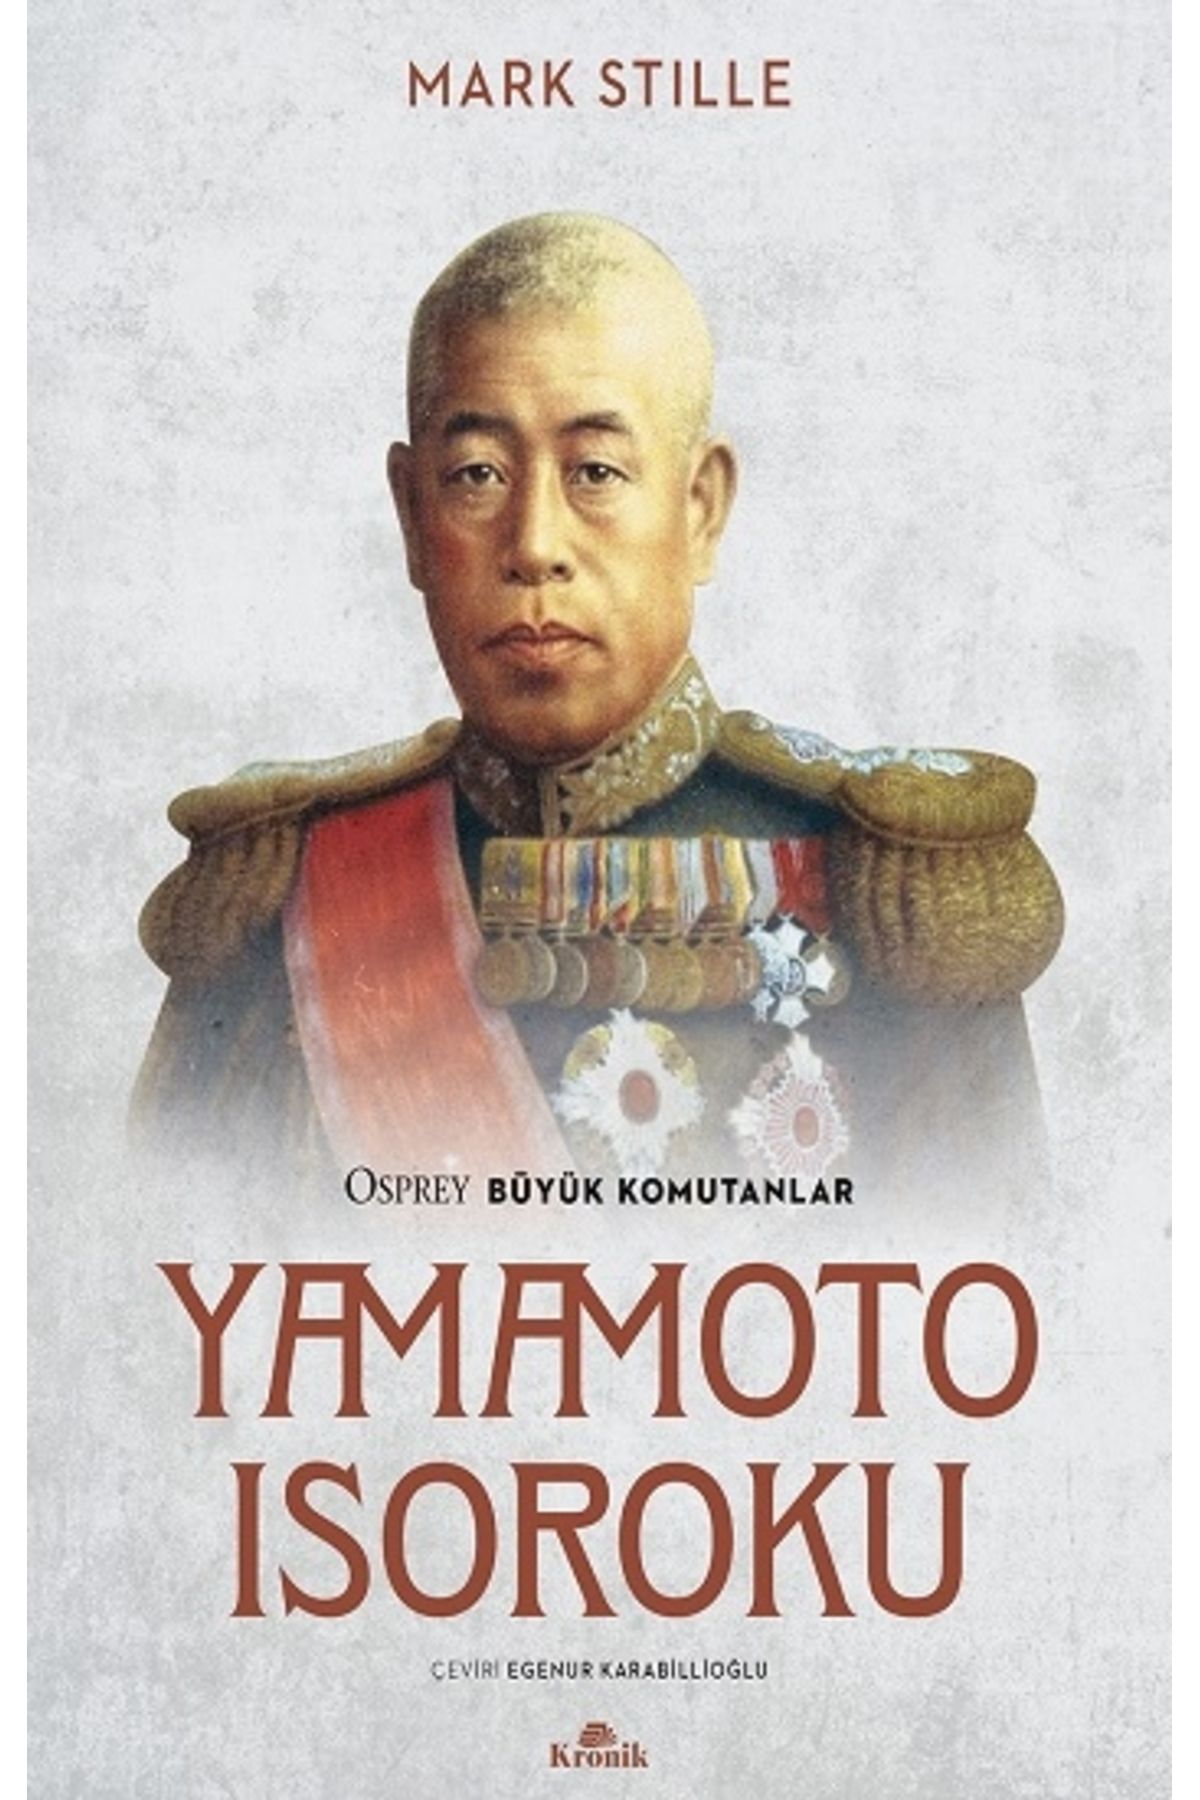 Kronik Kitap Yamamoto Isoroku Osprey Büyük Komutanlar